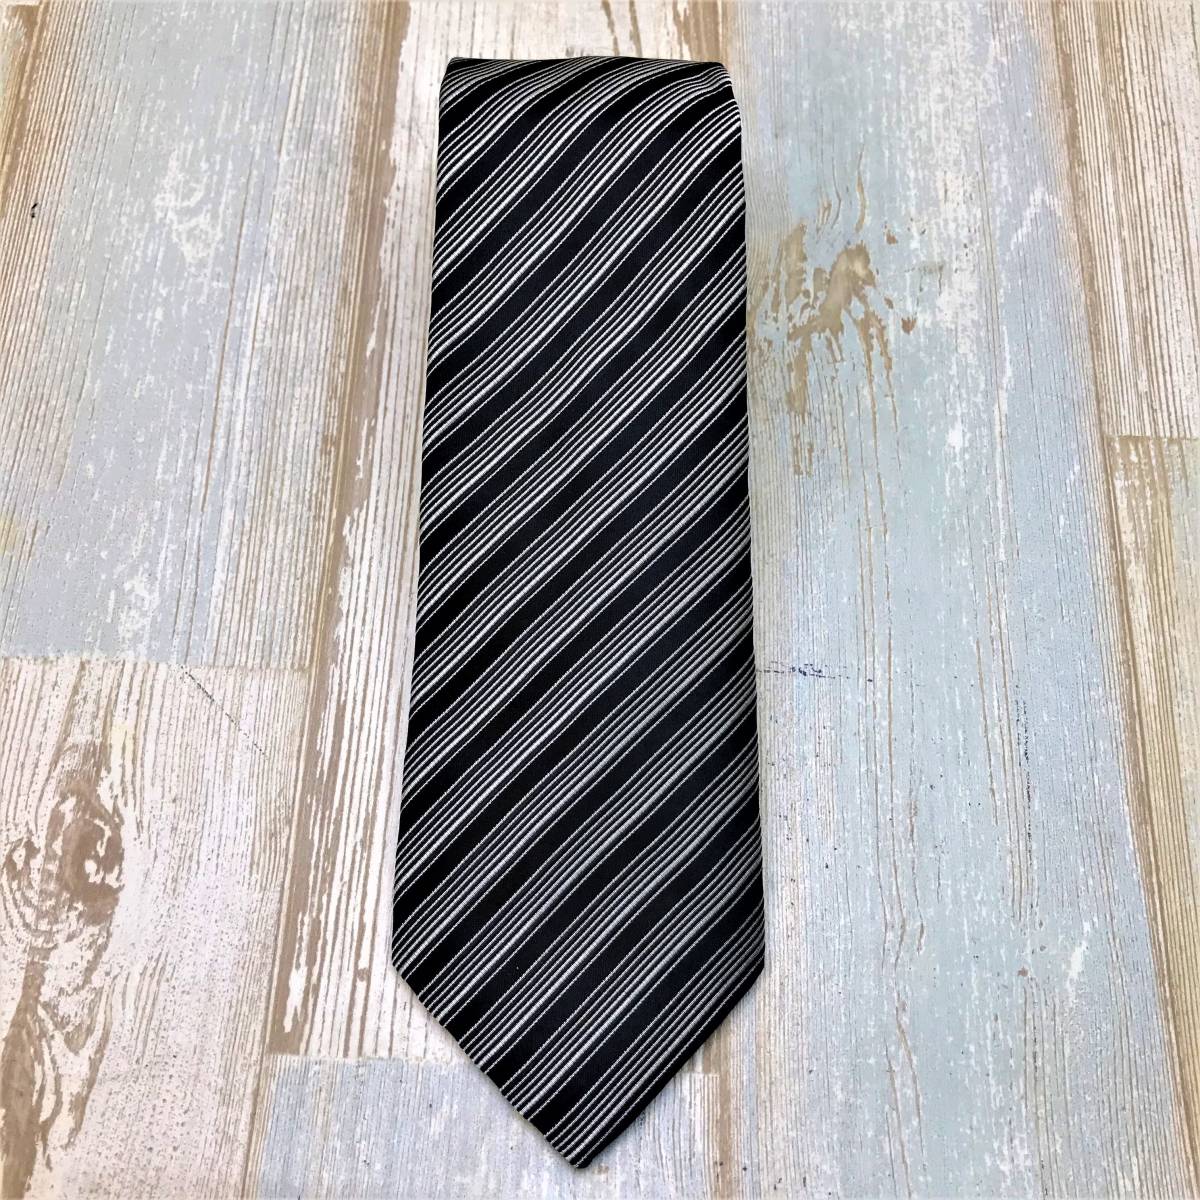  new goods * GIORGIO ARMANIjoru geo Armani * necktie black group stripe series * Italy made silk made 